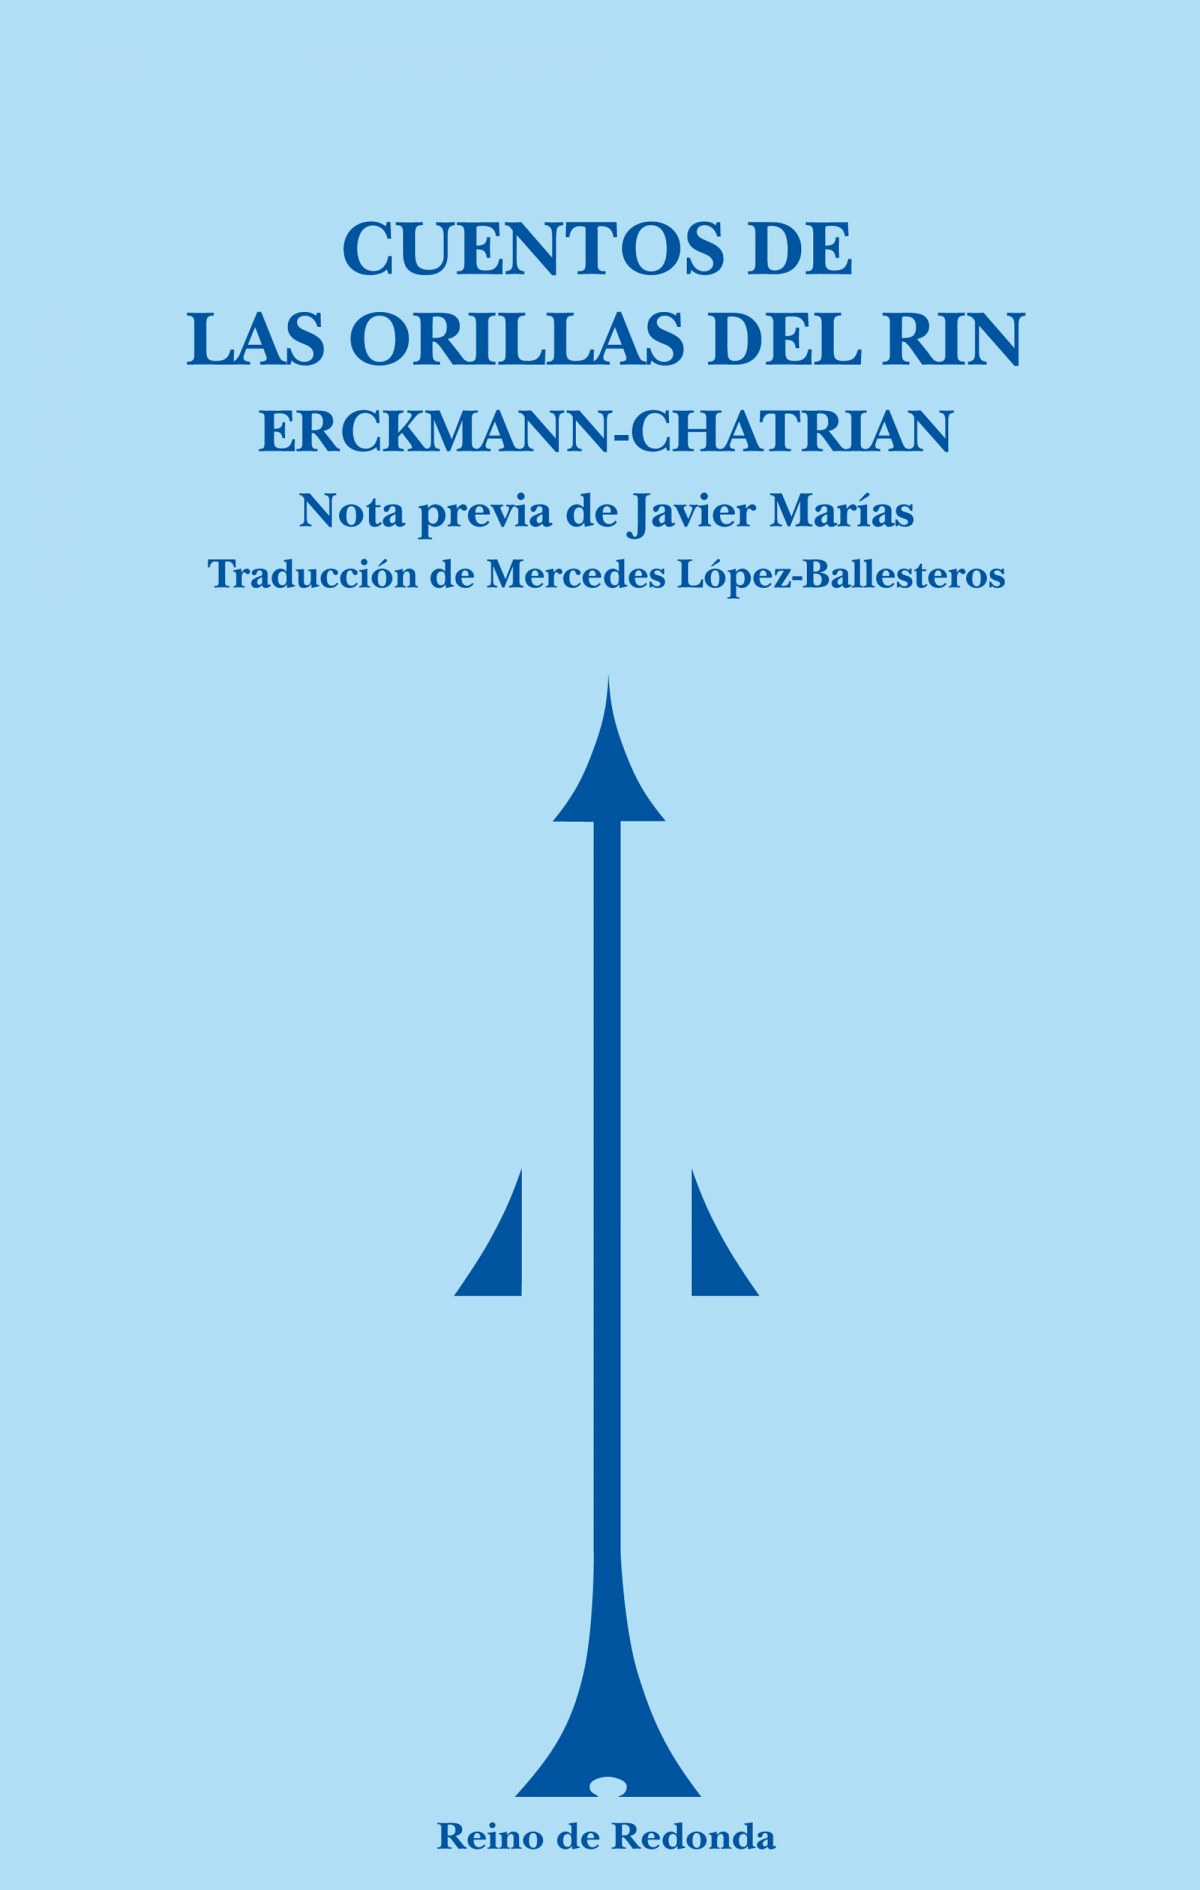 Cuentos de las orillas del Rin - Erckmann-Chatrian